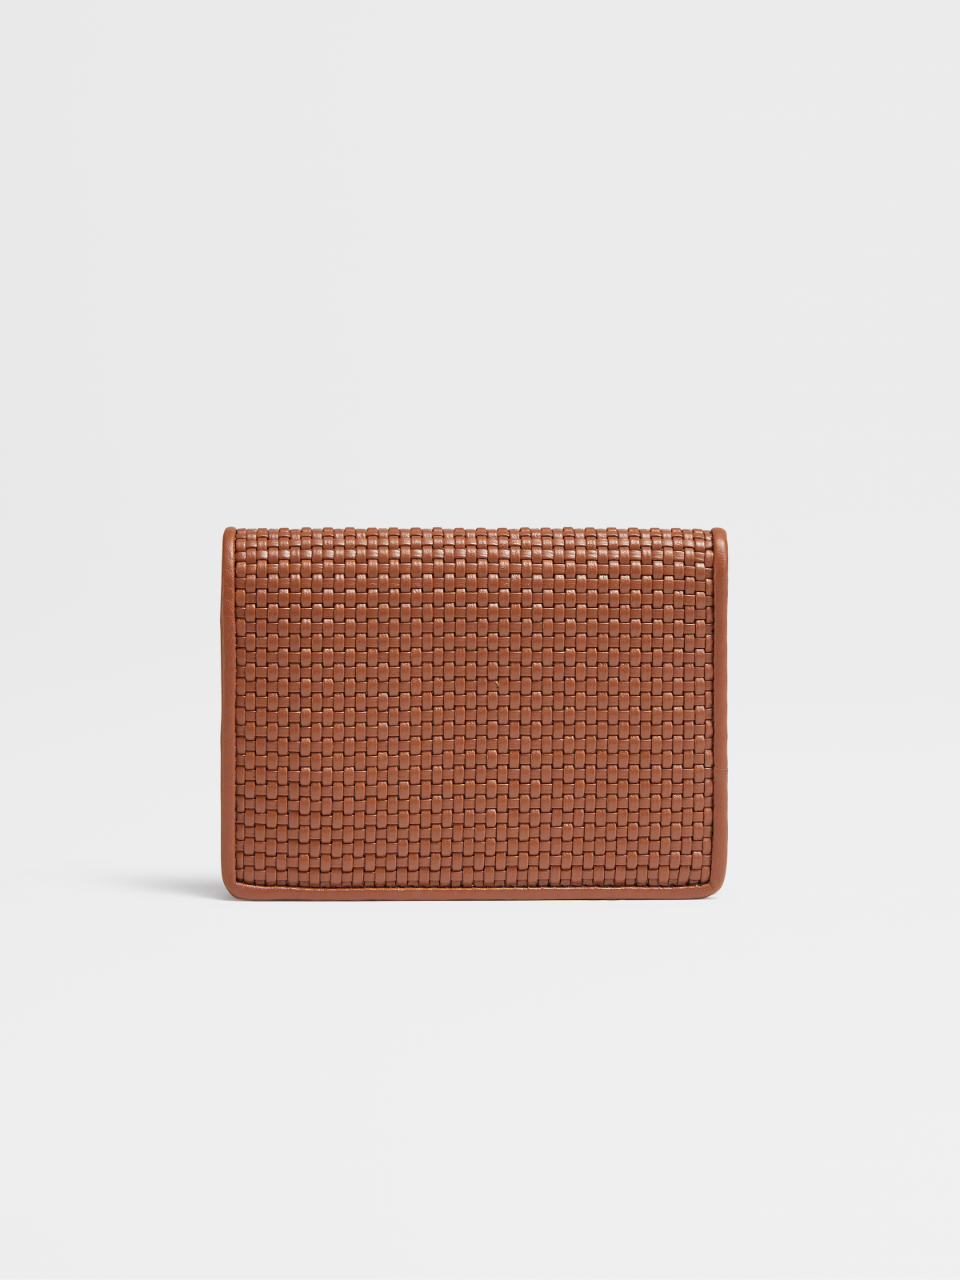 Vicuna PELLETESSUTA™ and Black Leather Mini Wallet